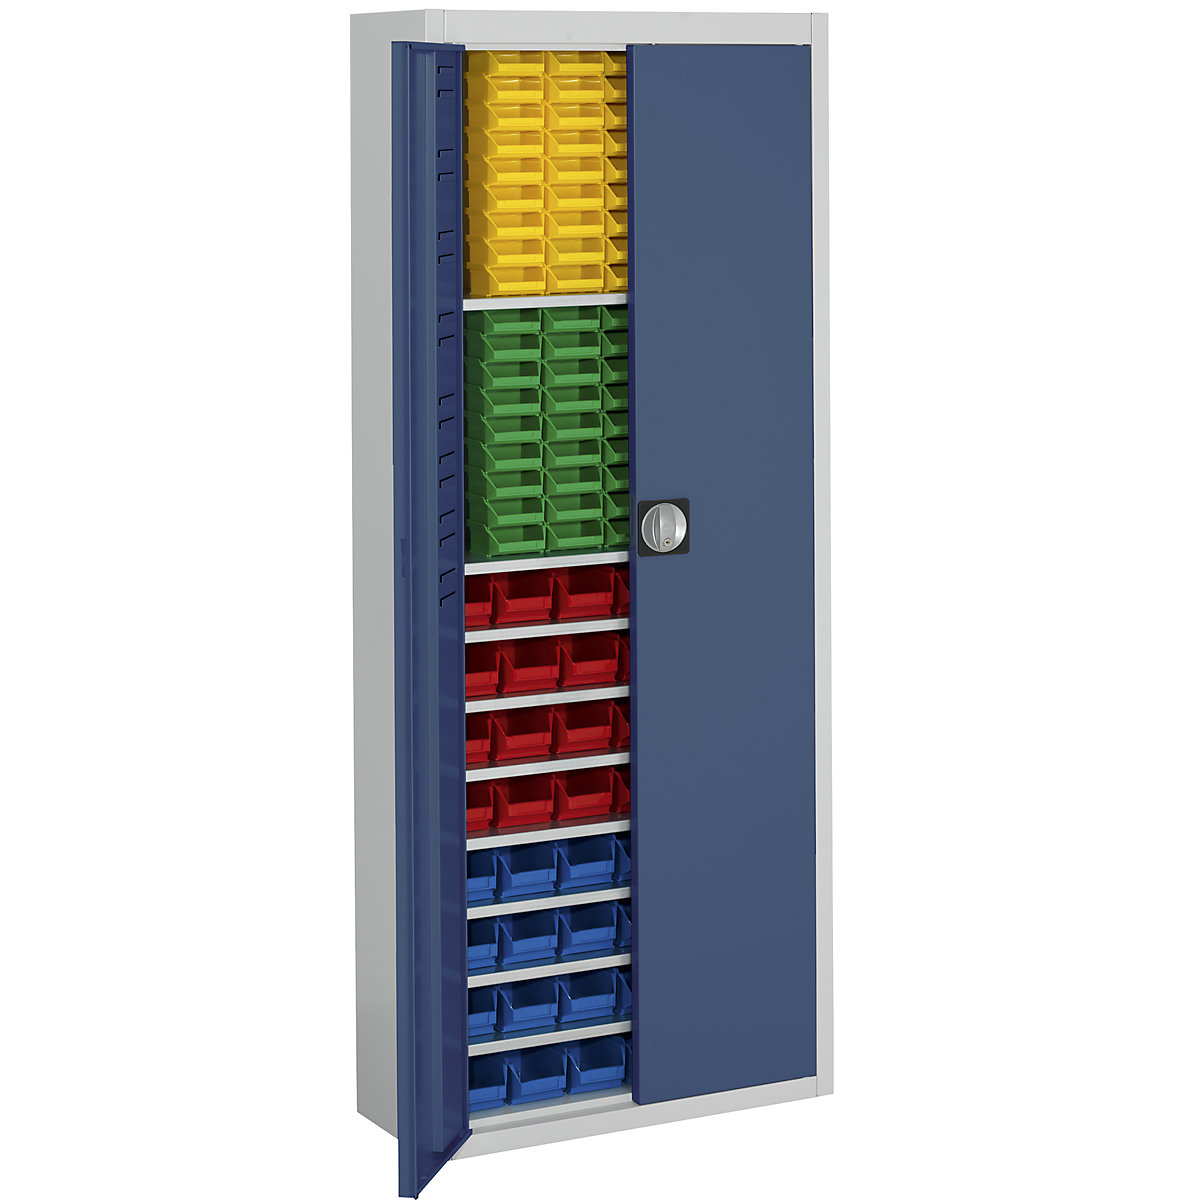 Skladišni ormar s otvorenim skladišnim kutijama – mauser, VxŠxD 1740 x 680 x 280 mm, u dvije boje, korpus u sivoj boji, vrata u plavoj boji, 138 kutija-15